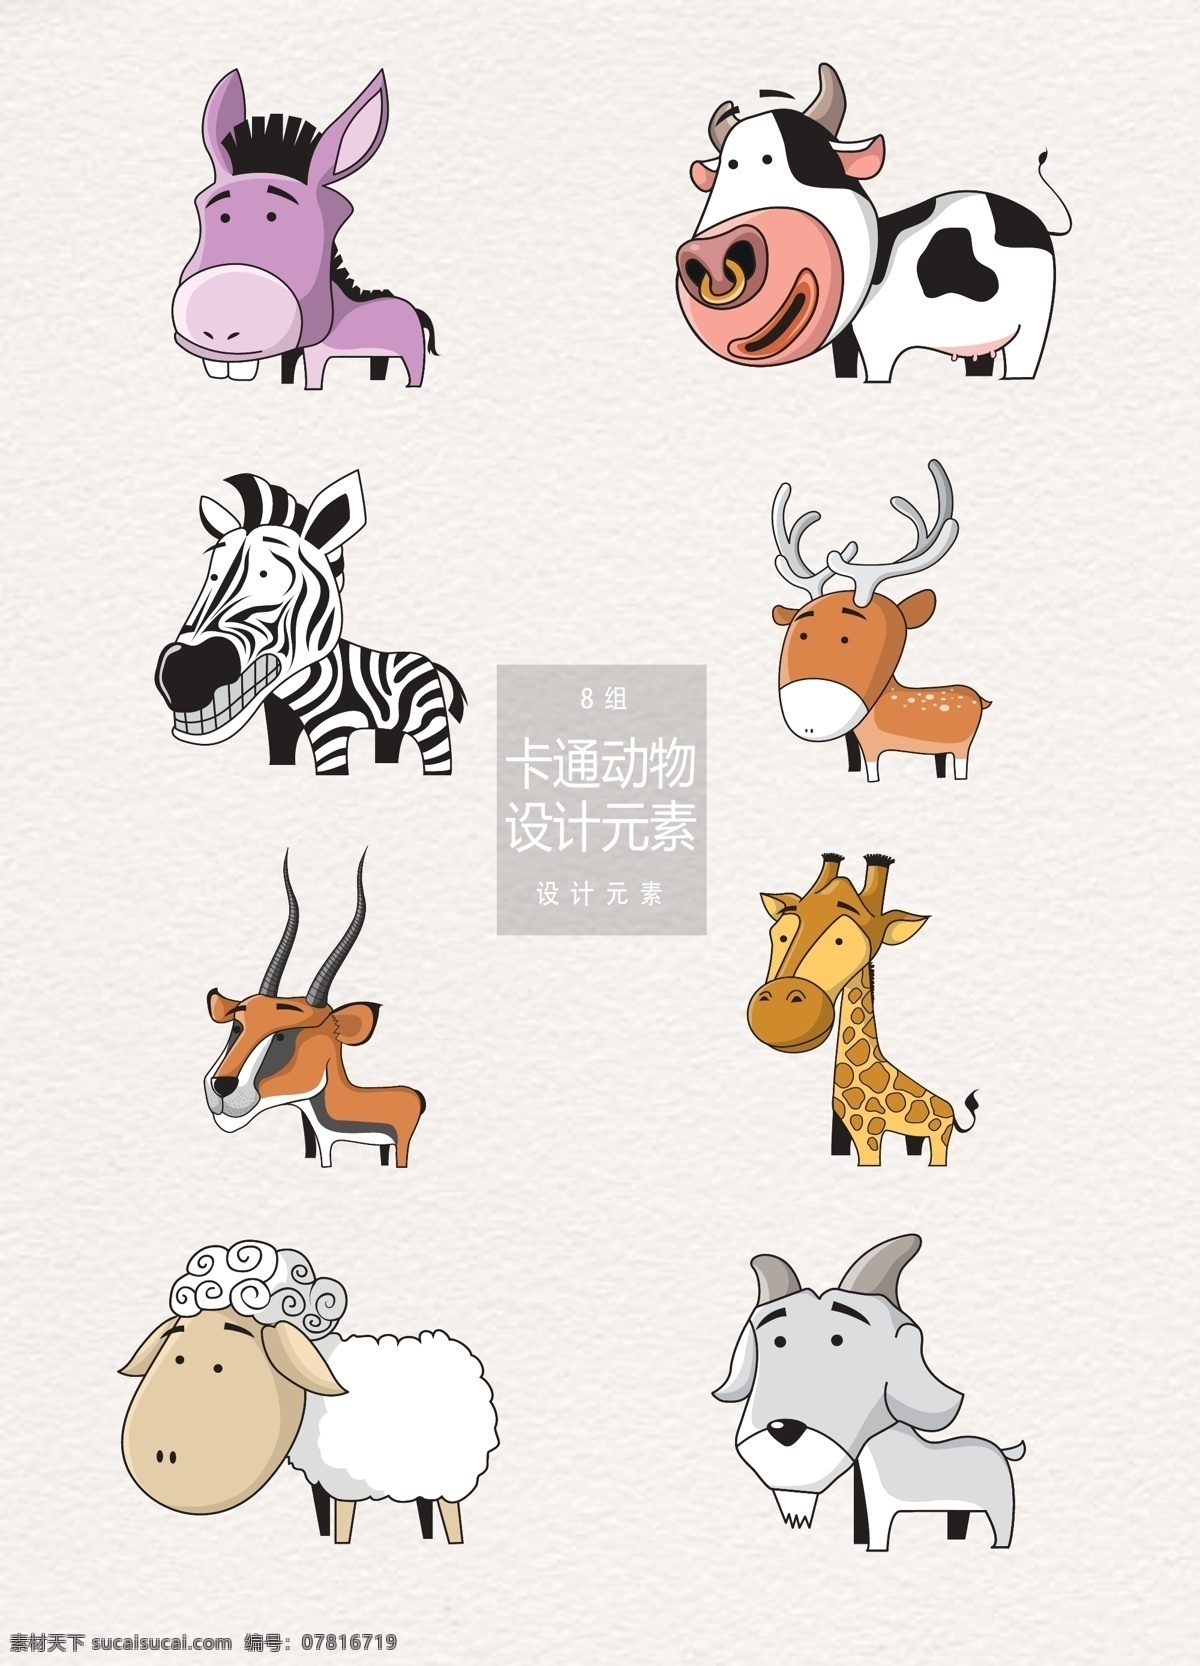 可爱 手绘 卡通 动物 元素 卡通动物 奶牛 长颈鹿 设计元素 手绘动物 驴子 斑马 麋鹿 羚羊 山羊